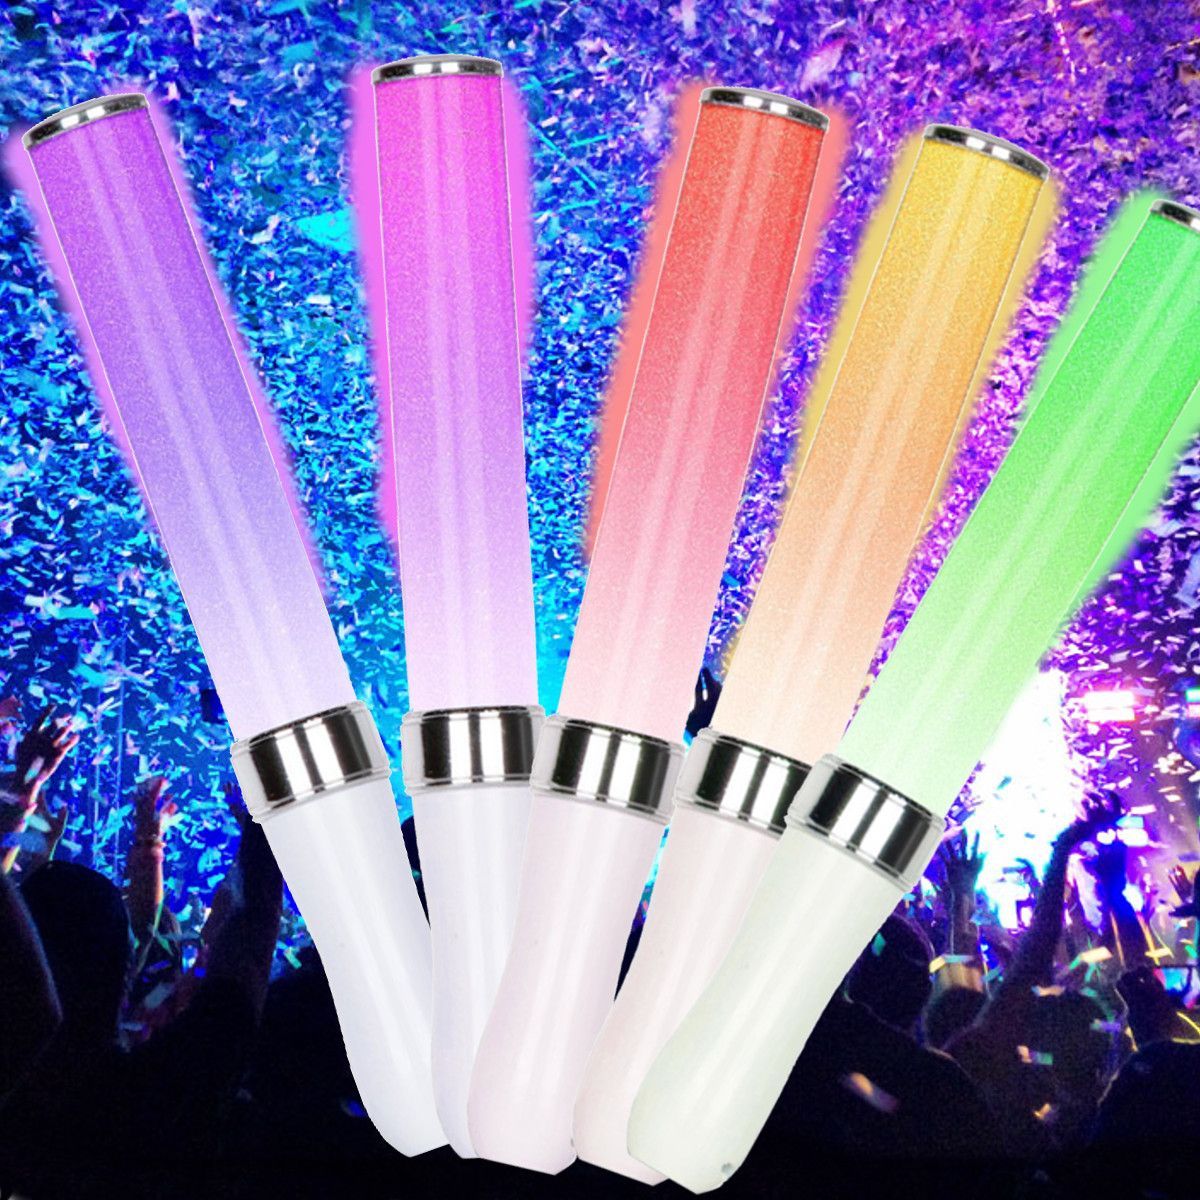 15-Patterns-Glow-Sticks-Party-Sticks-Glow-Sticks-Glow-In-The-Dark-Light-Sticks-1679119